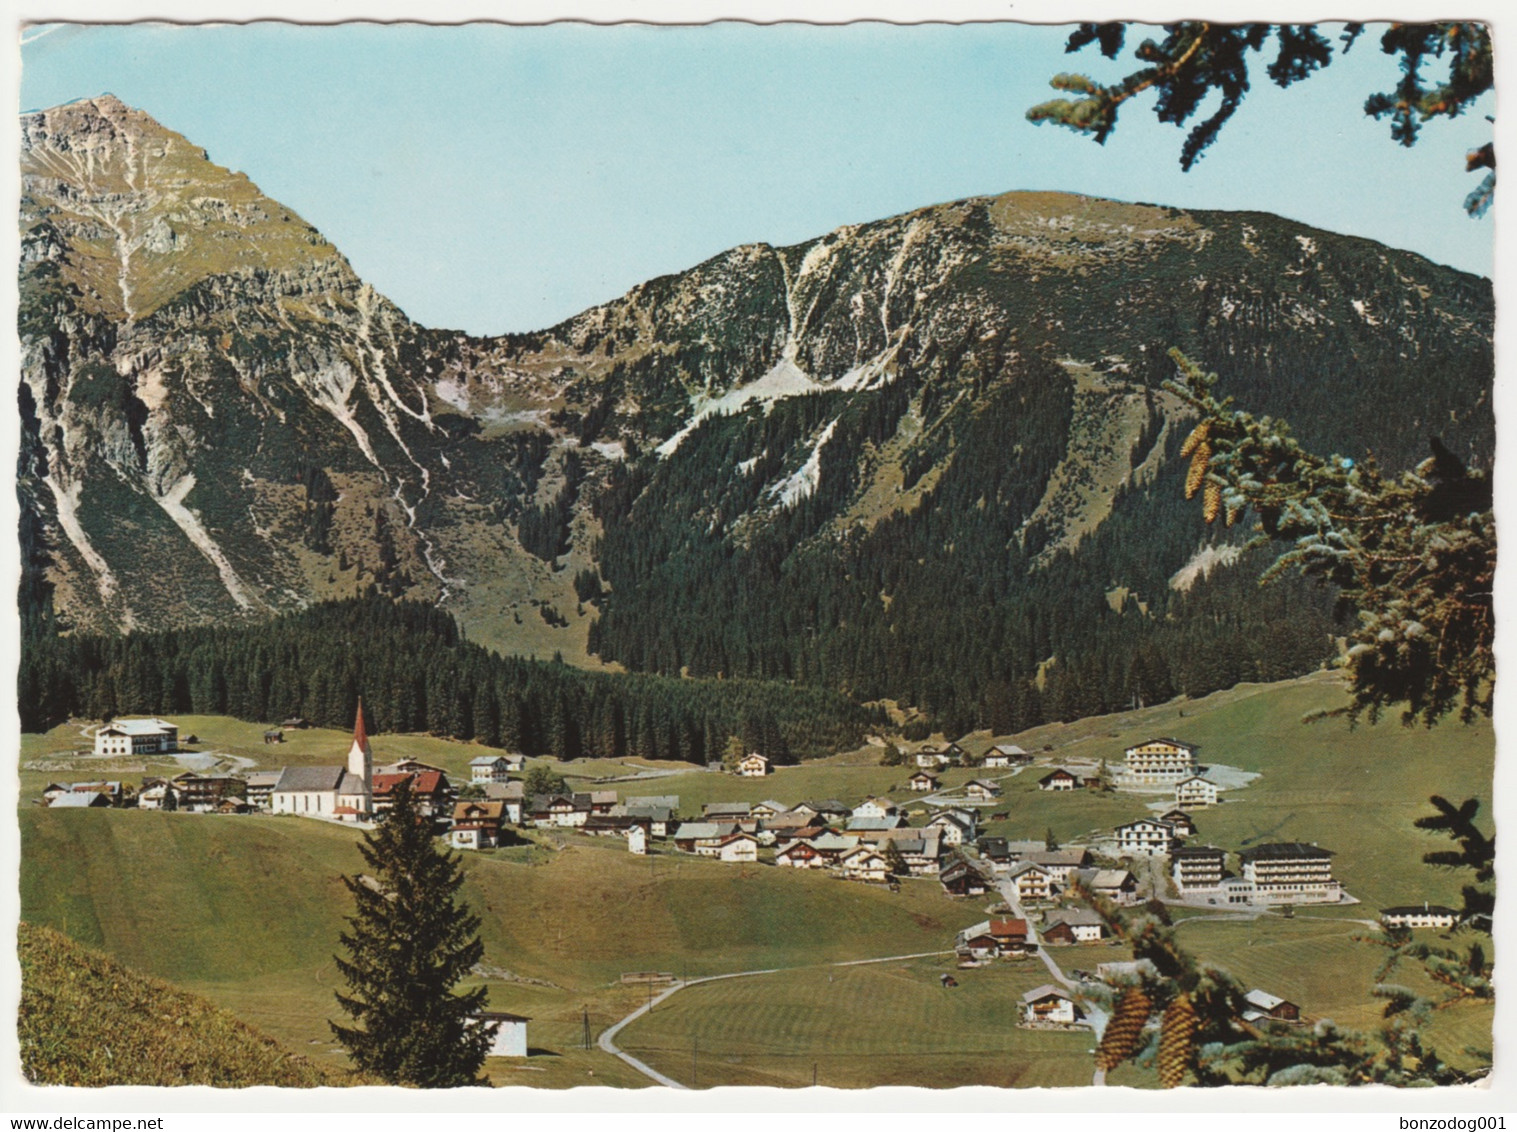 Berwang, Tirol, Austria - Berwang